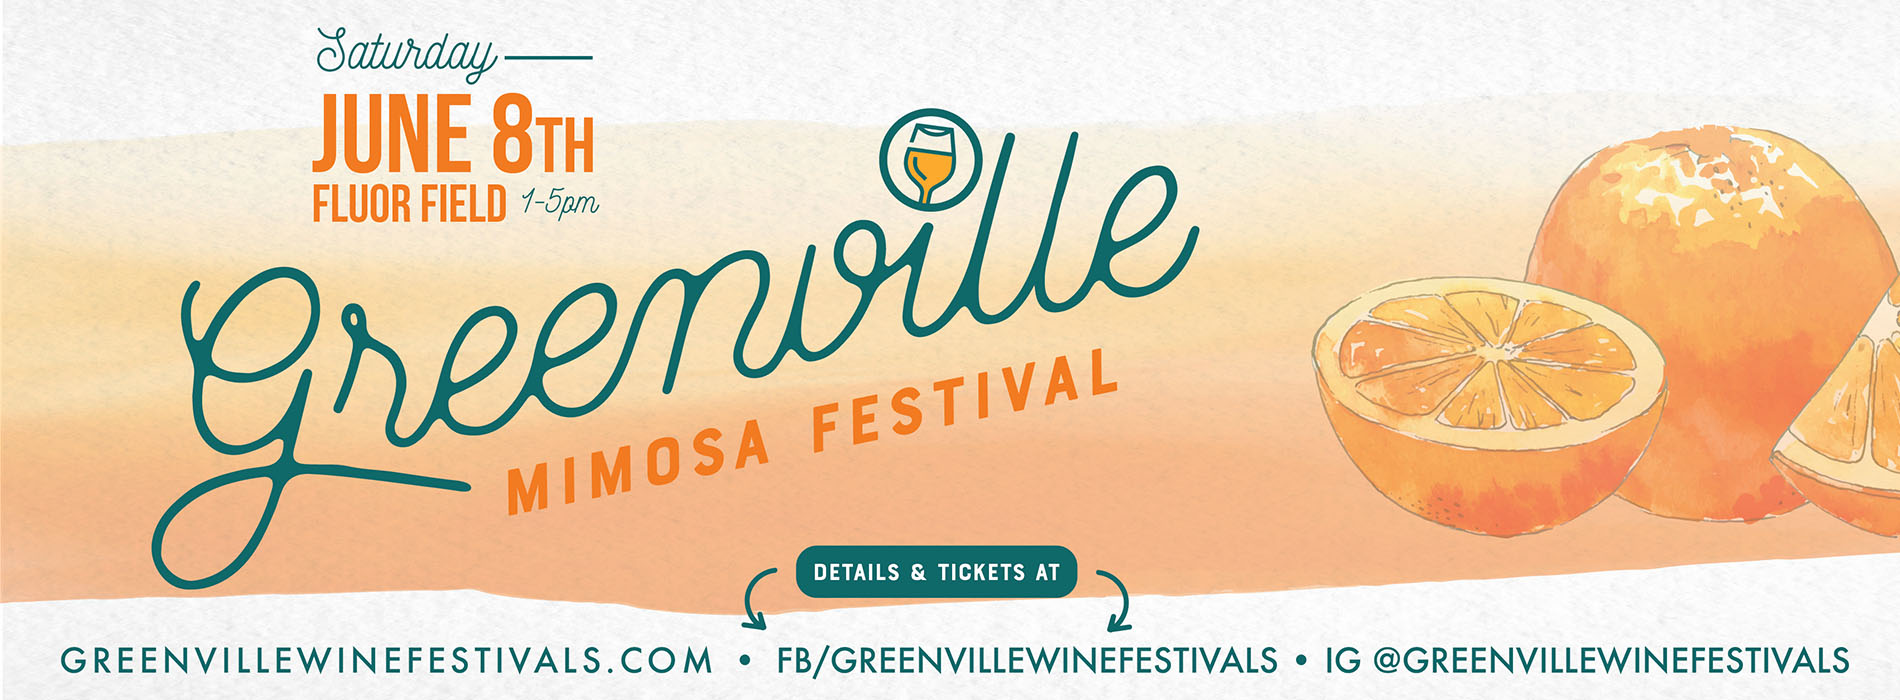 Greenville Mimosa Festival